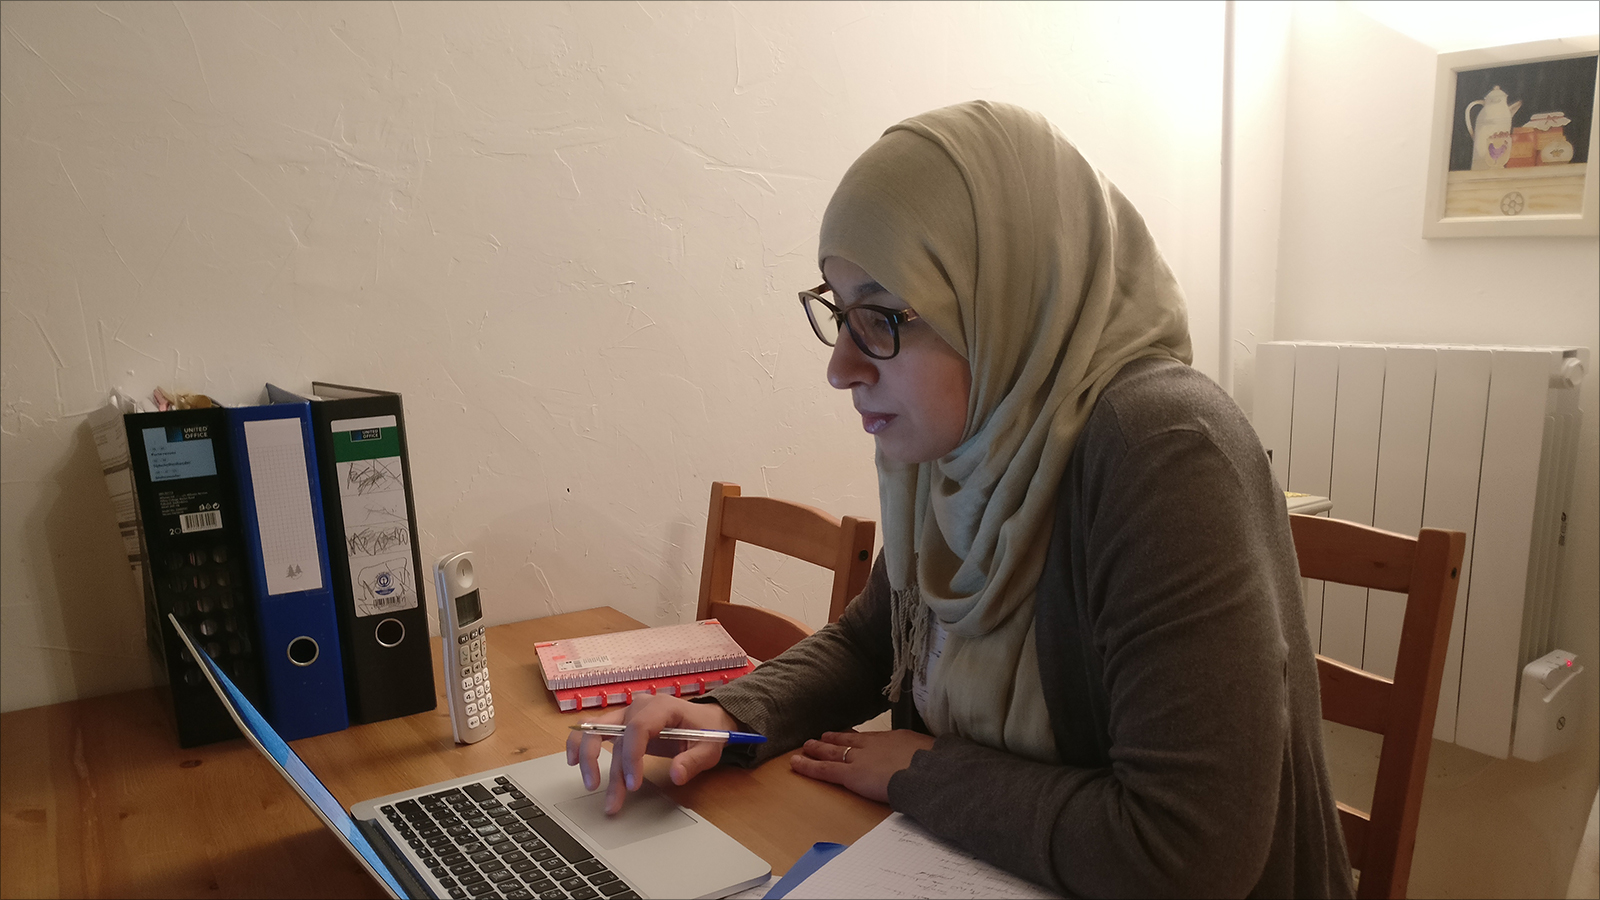 المهندسة خديجة الأبيض فضلت الاستقالة والعمل من المنزل بعد قرارها ارتداء الحجاب قبل سبع سنوات (الجزيرة)